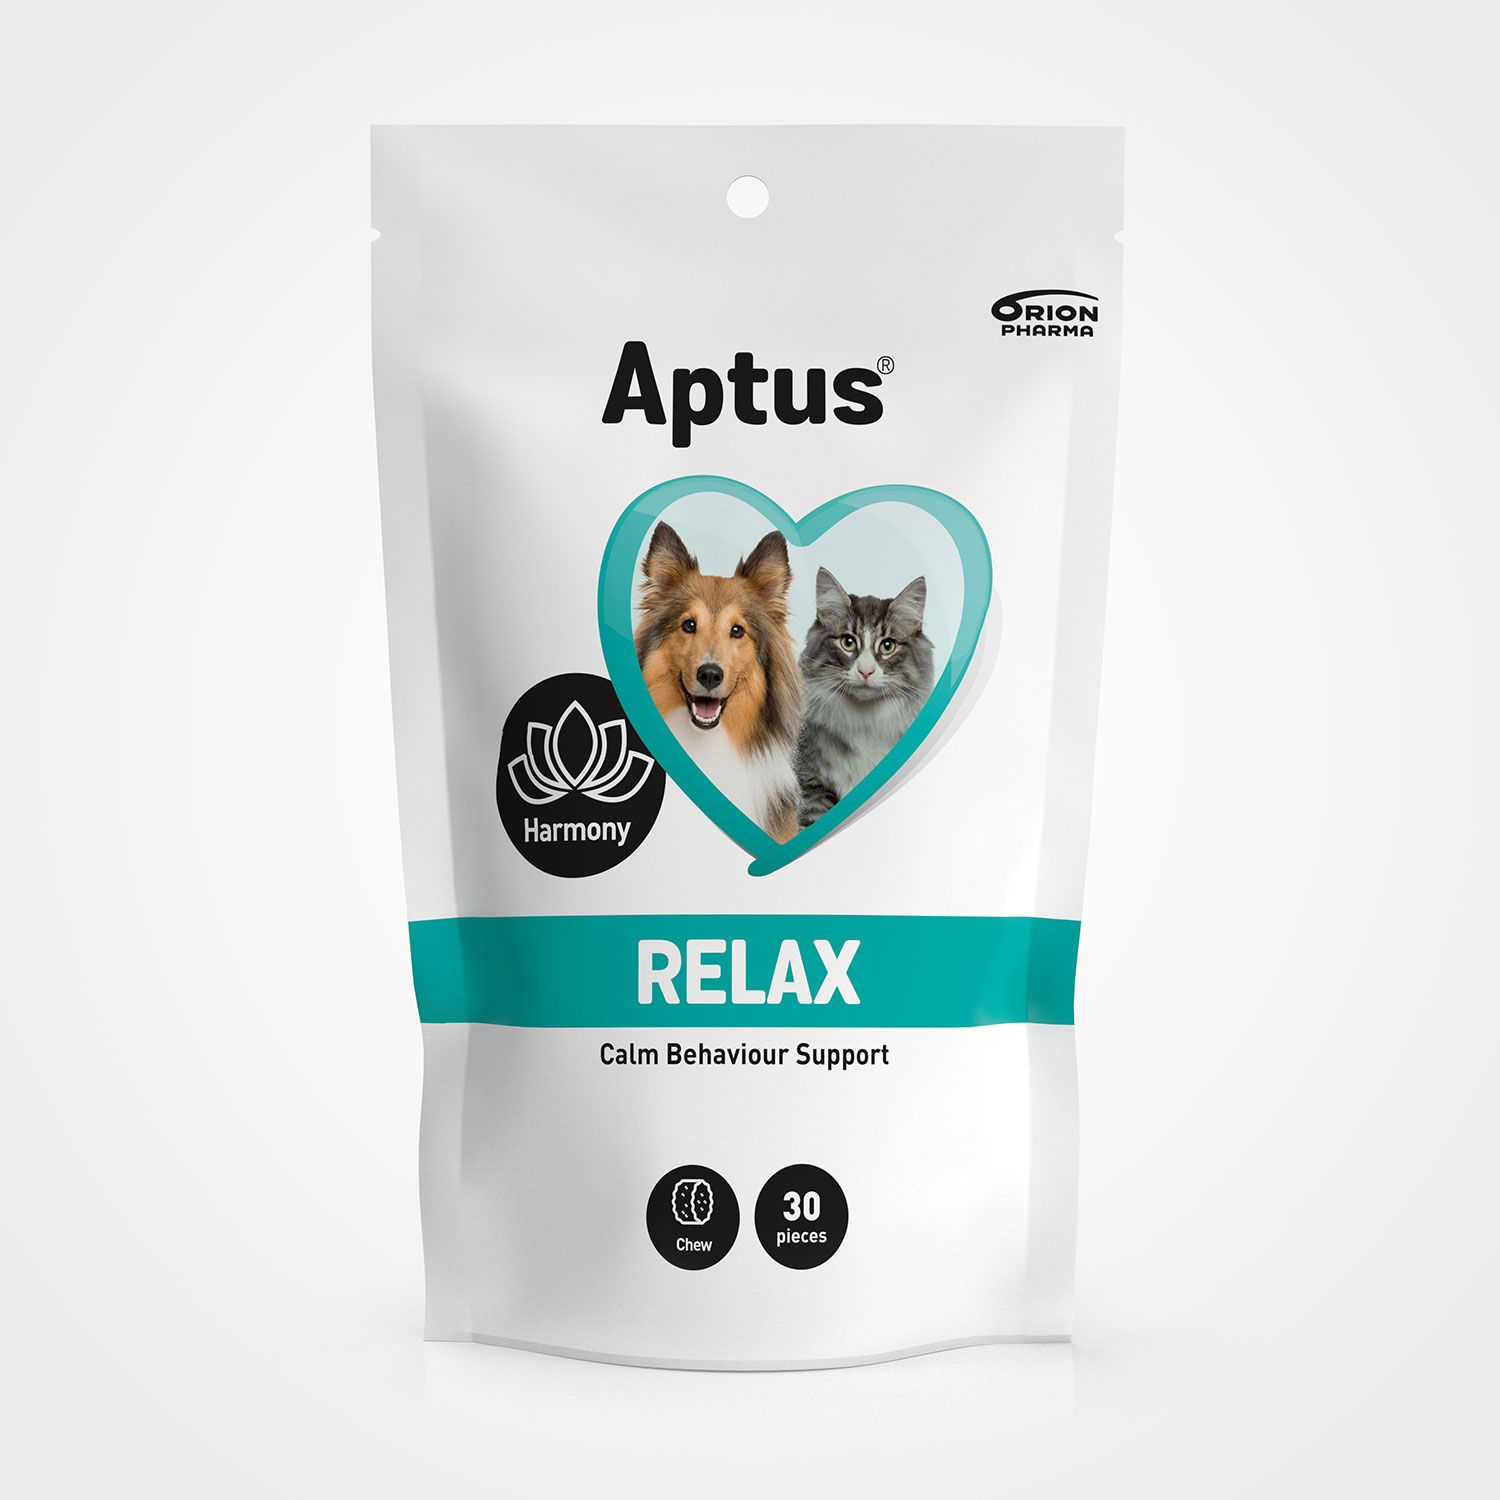 Aptus Relax - Calm Behaviour Support